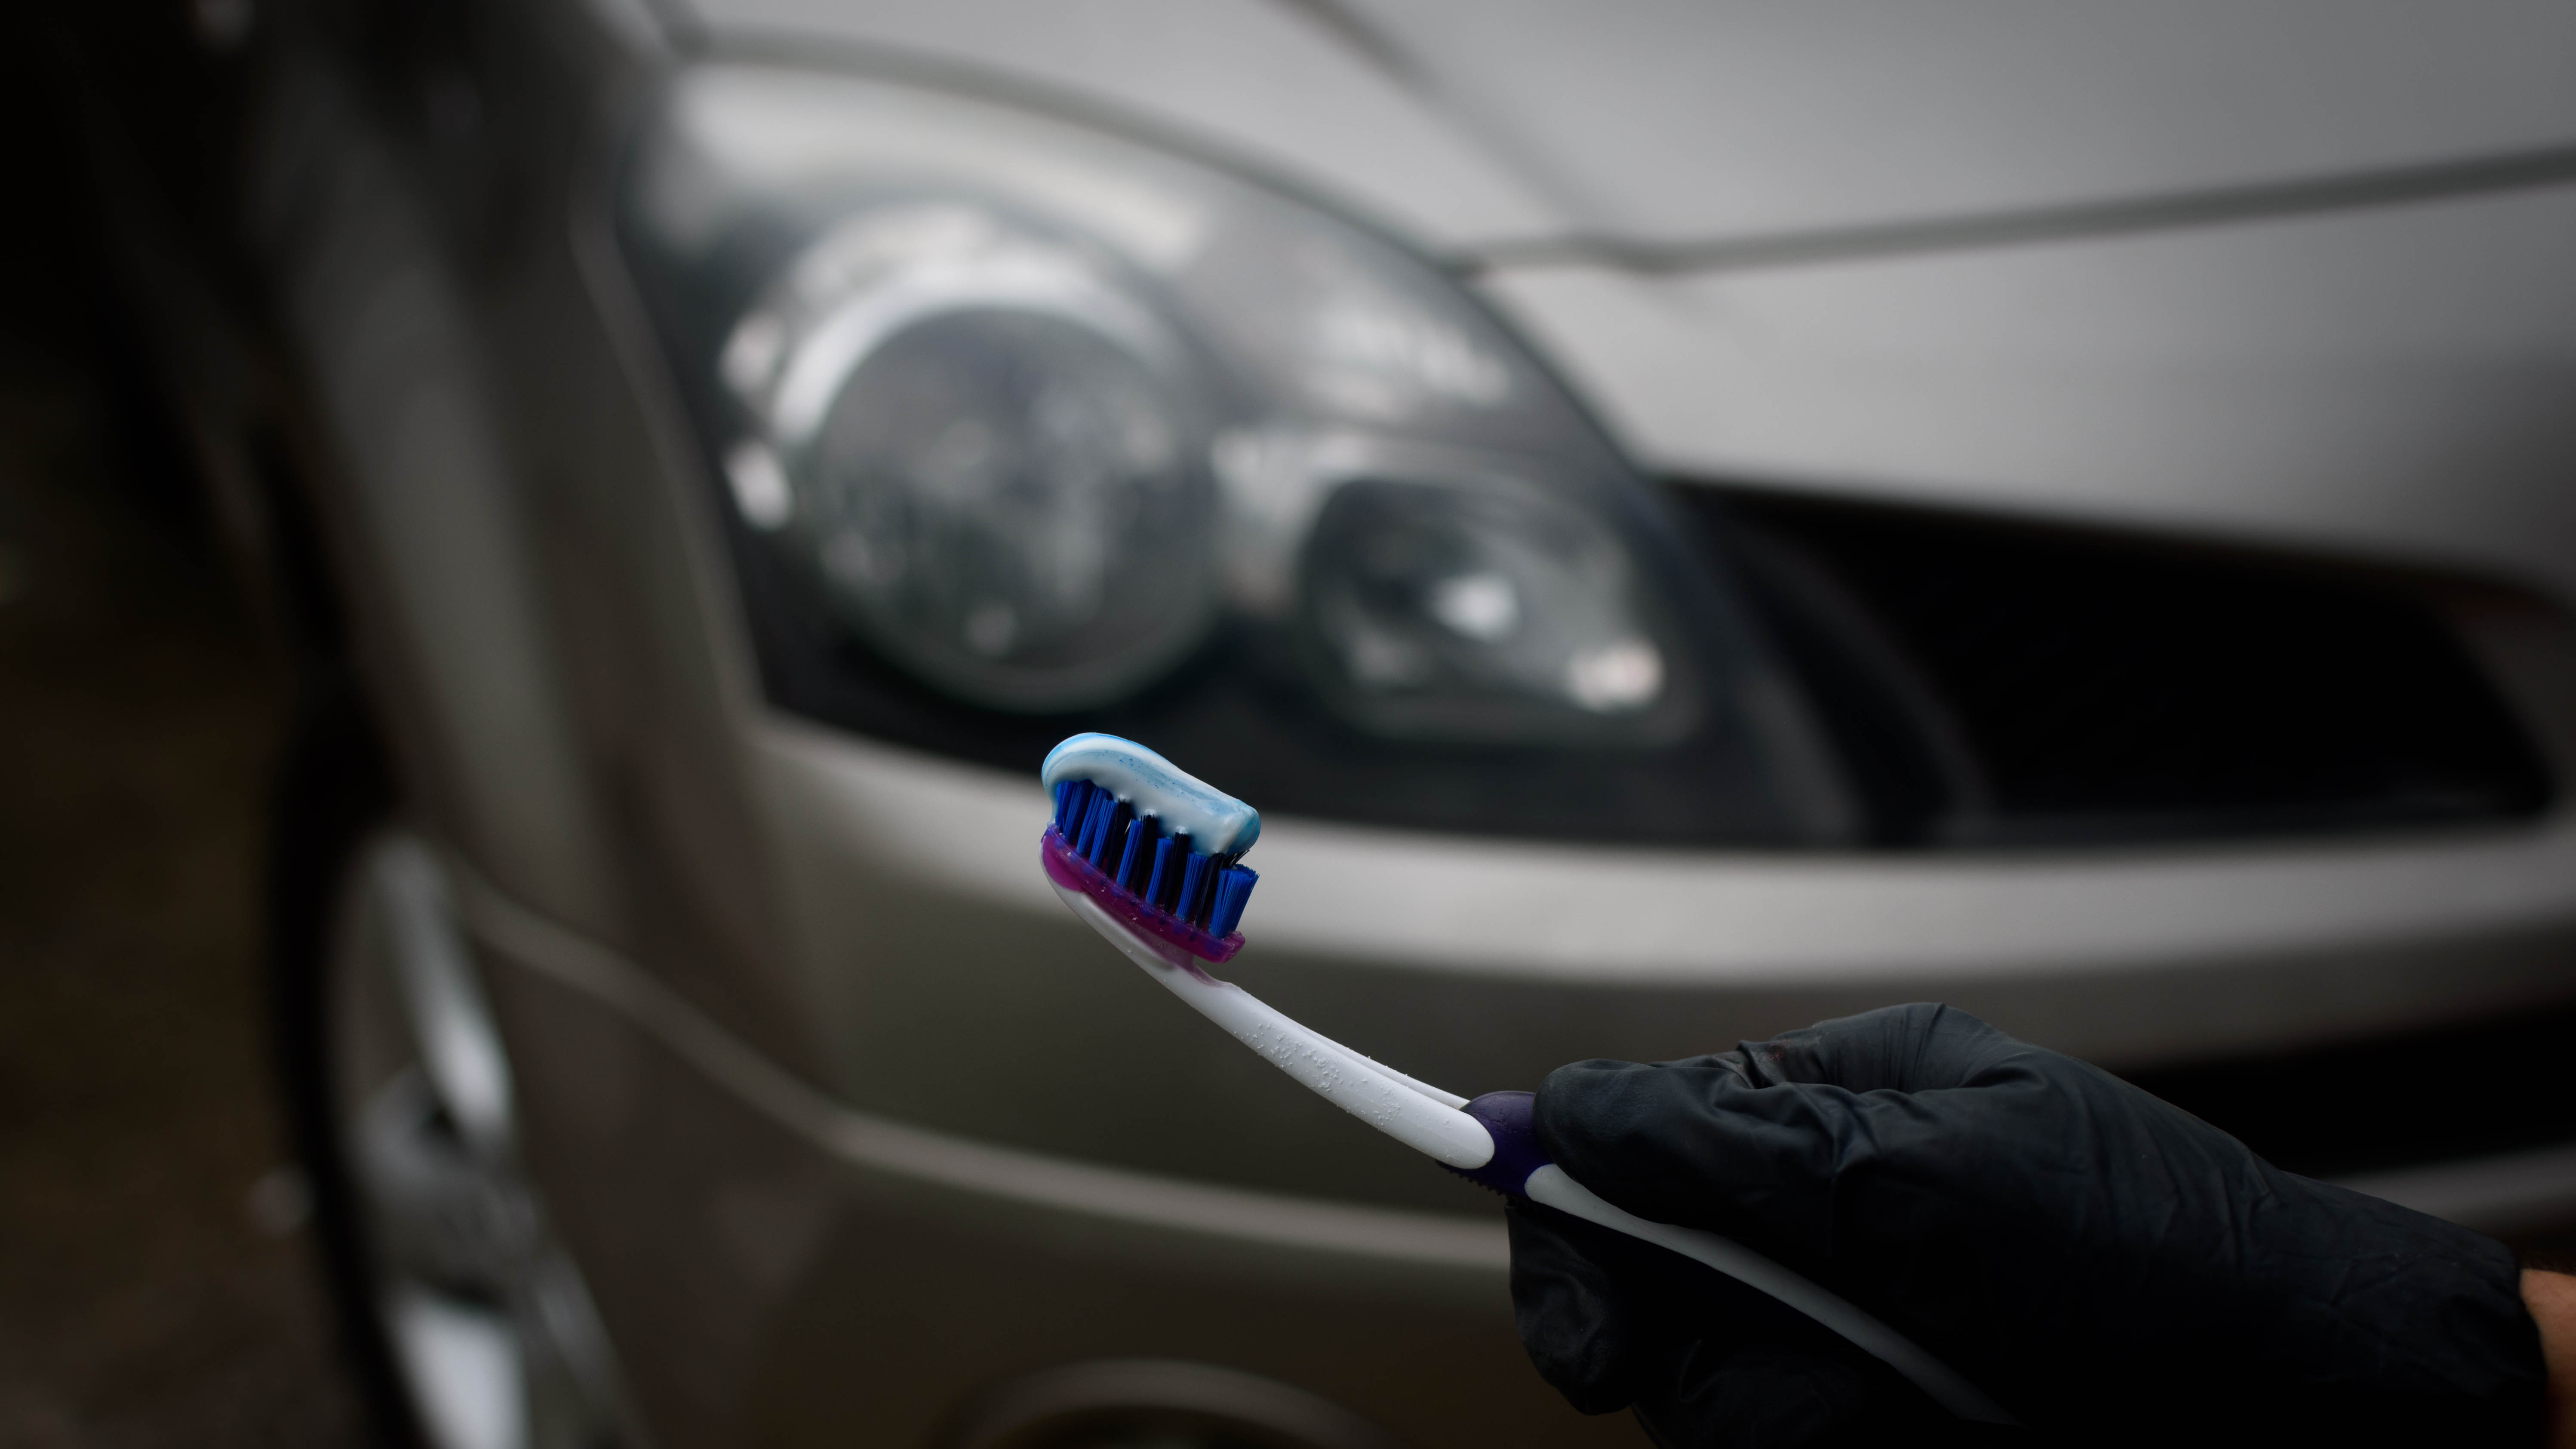 Bir arabanın farlarının önünde diş macunu tutan bir diş fırçası